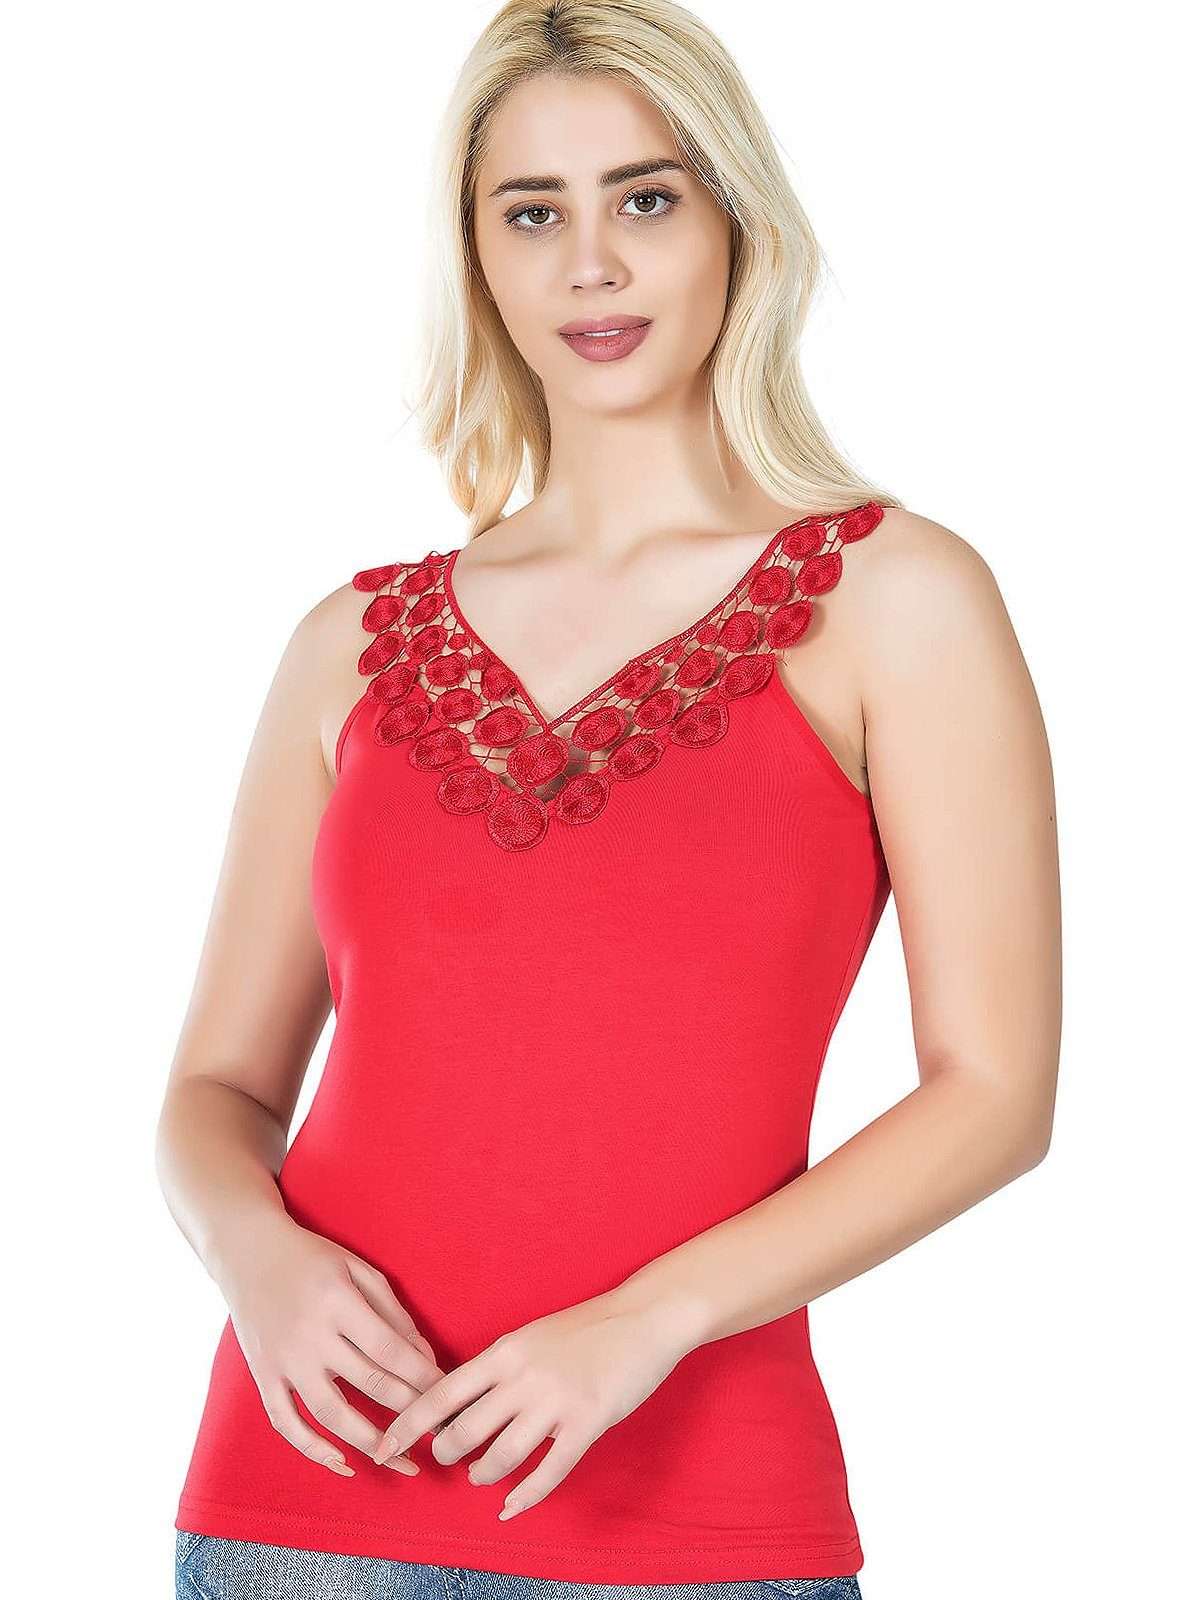 Кружевной топ, женская майка, блузка с V-образным вырезом, топ, гипюровая аппликация, красный